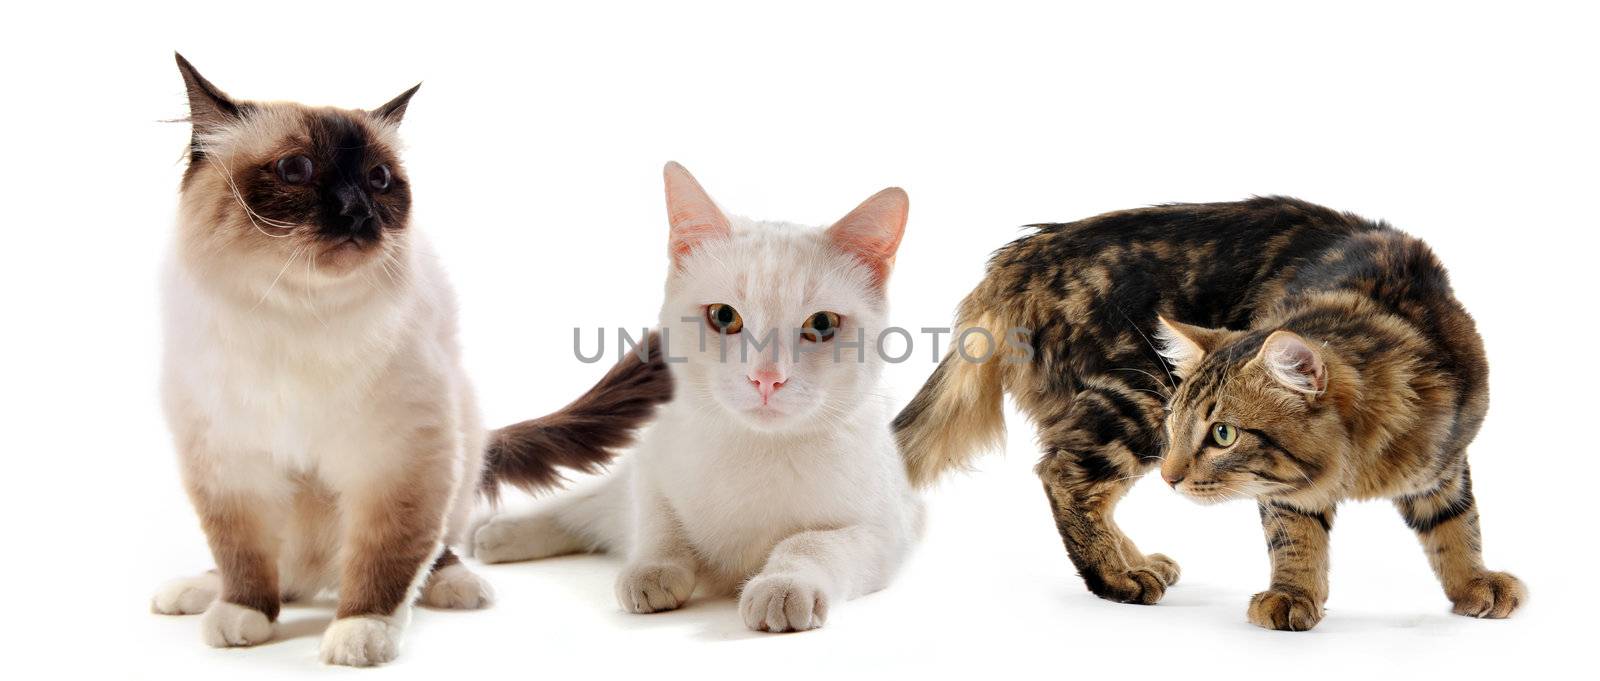 three cats by cynoclub